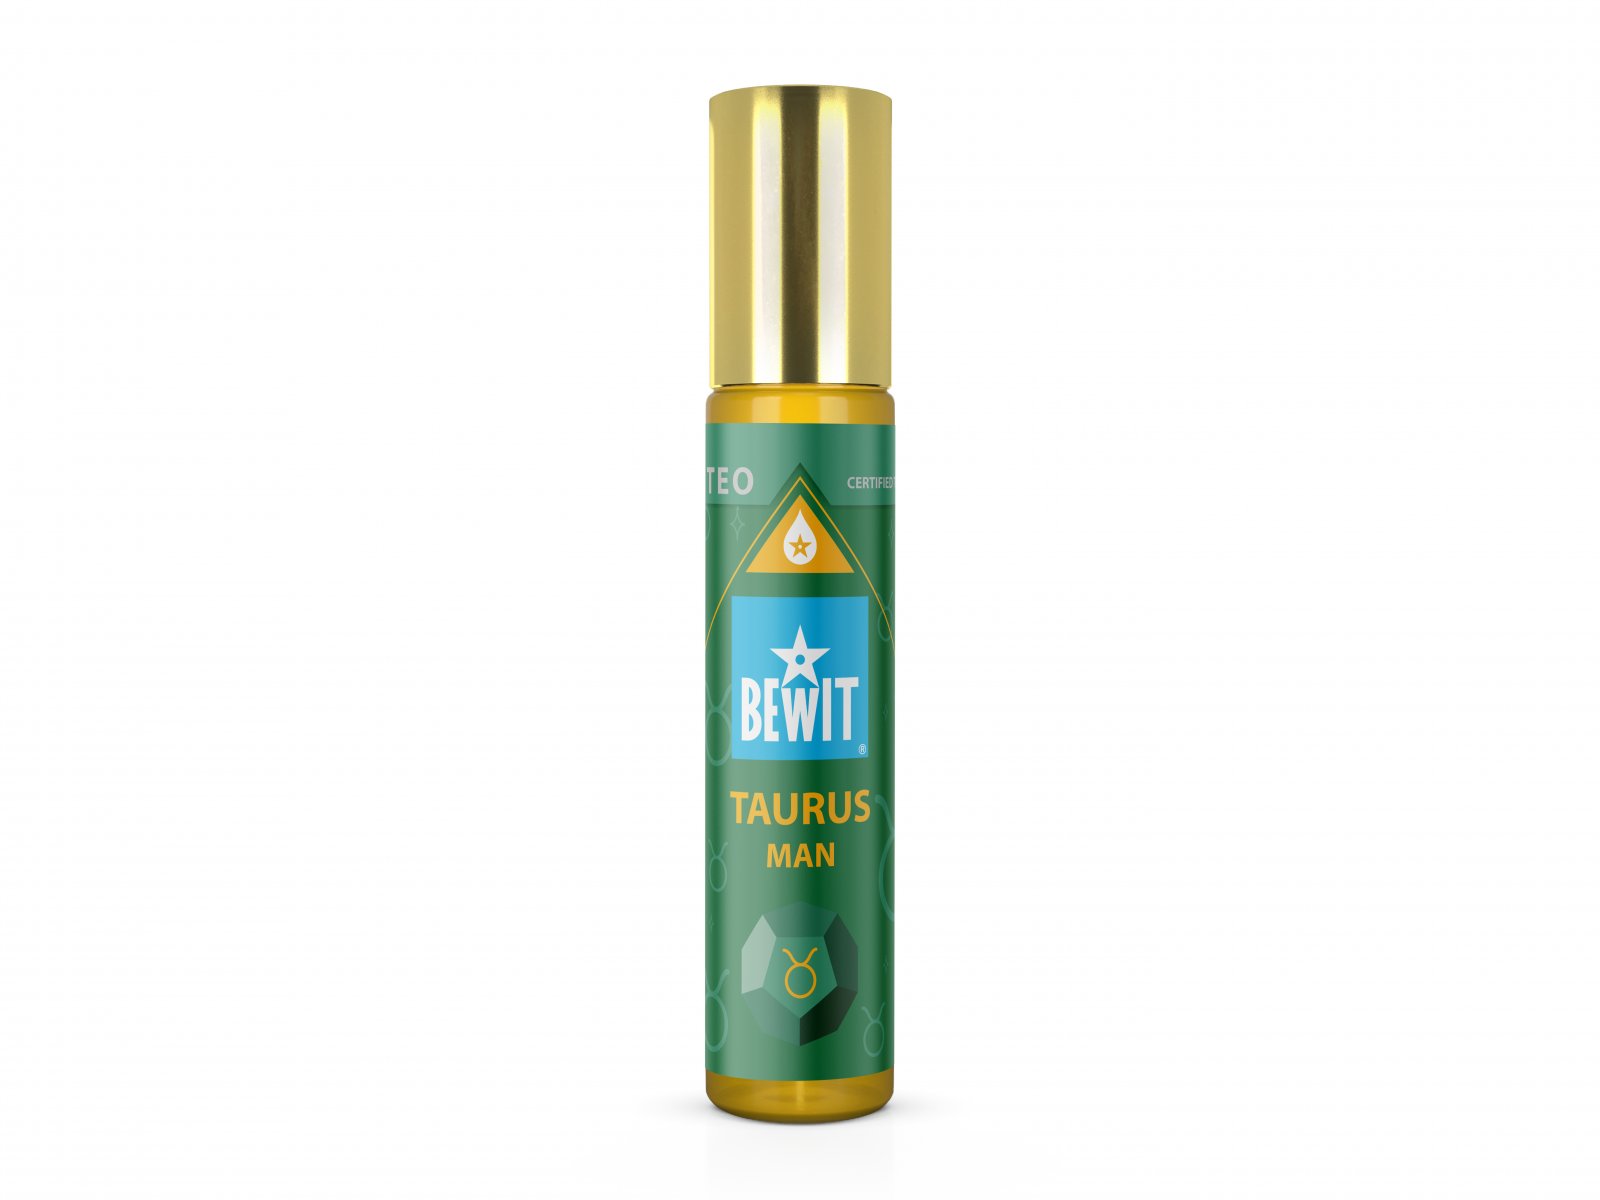 BEWIT MAN TAURUS (BÝK) - Mužský roll-on olejový parfém - 1